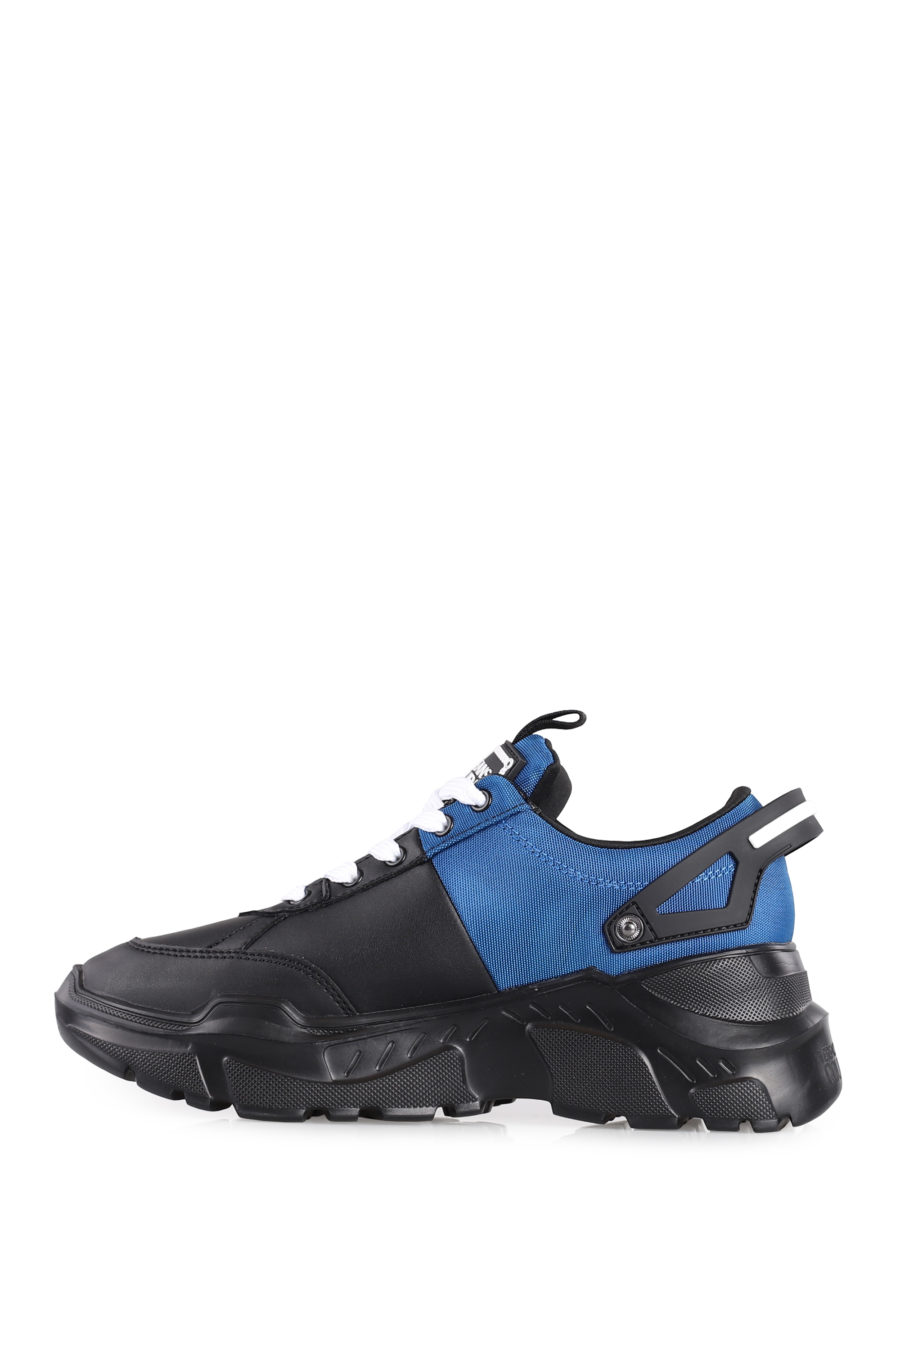 Zapatillas "Speedtrack" de color negro y azul - IMG 1025